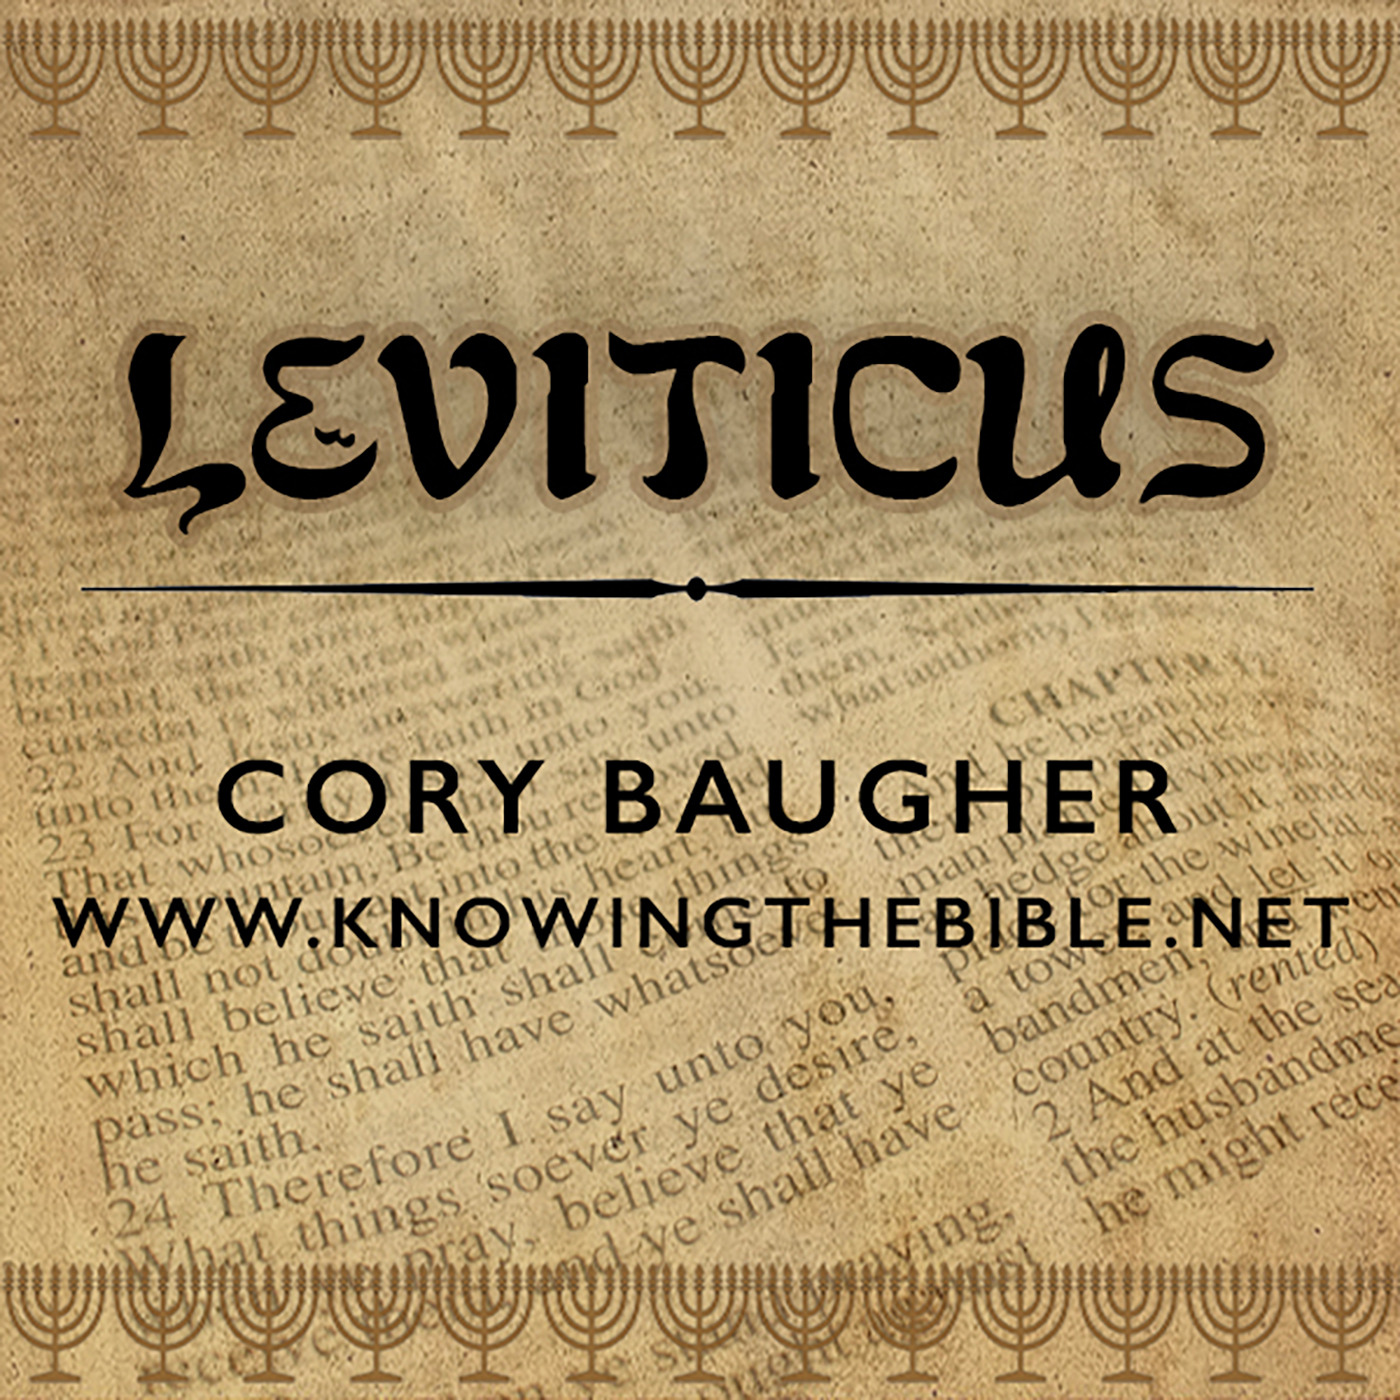 Leviticus 18:1-18